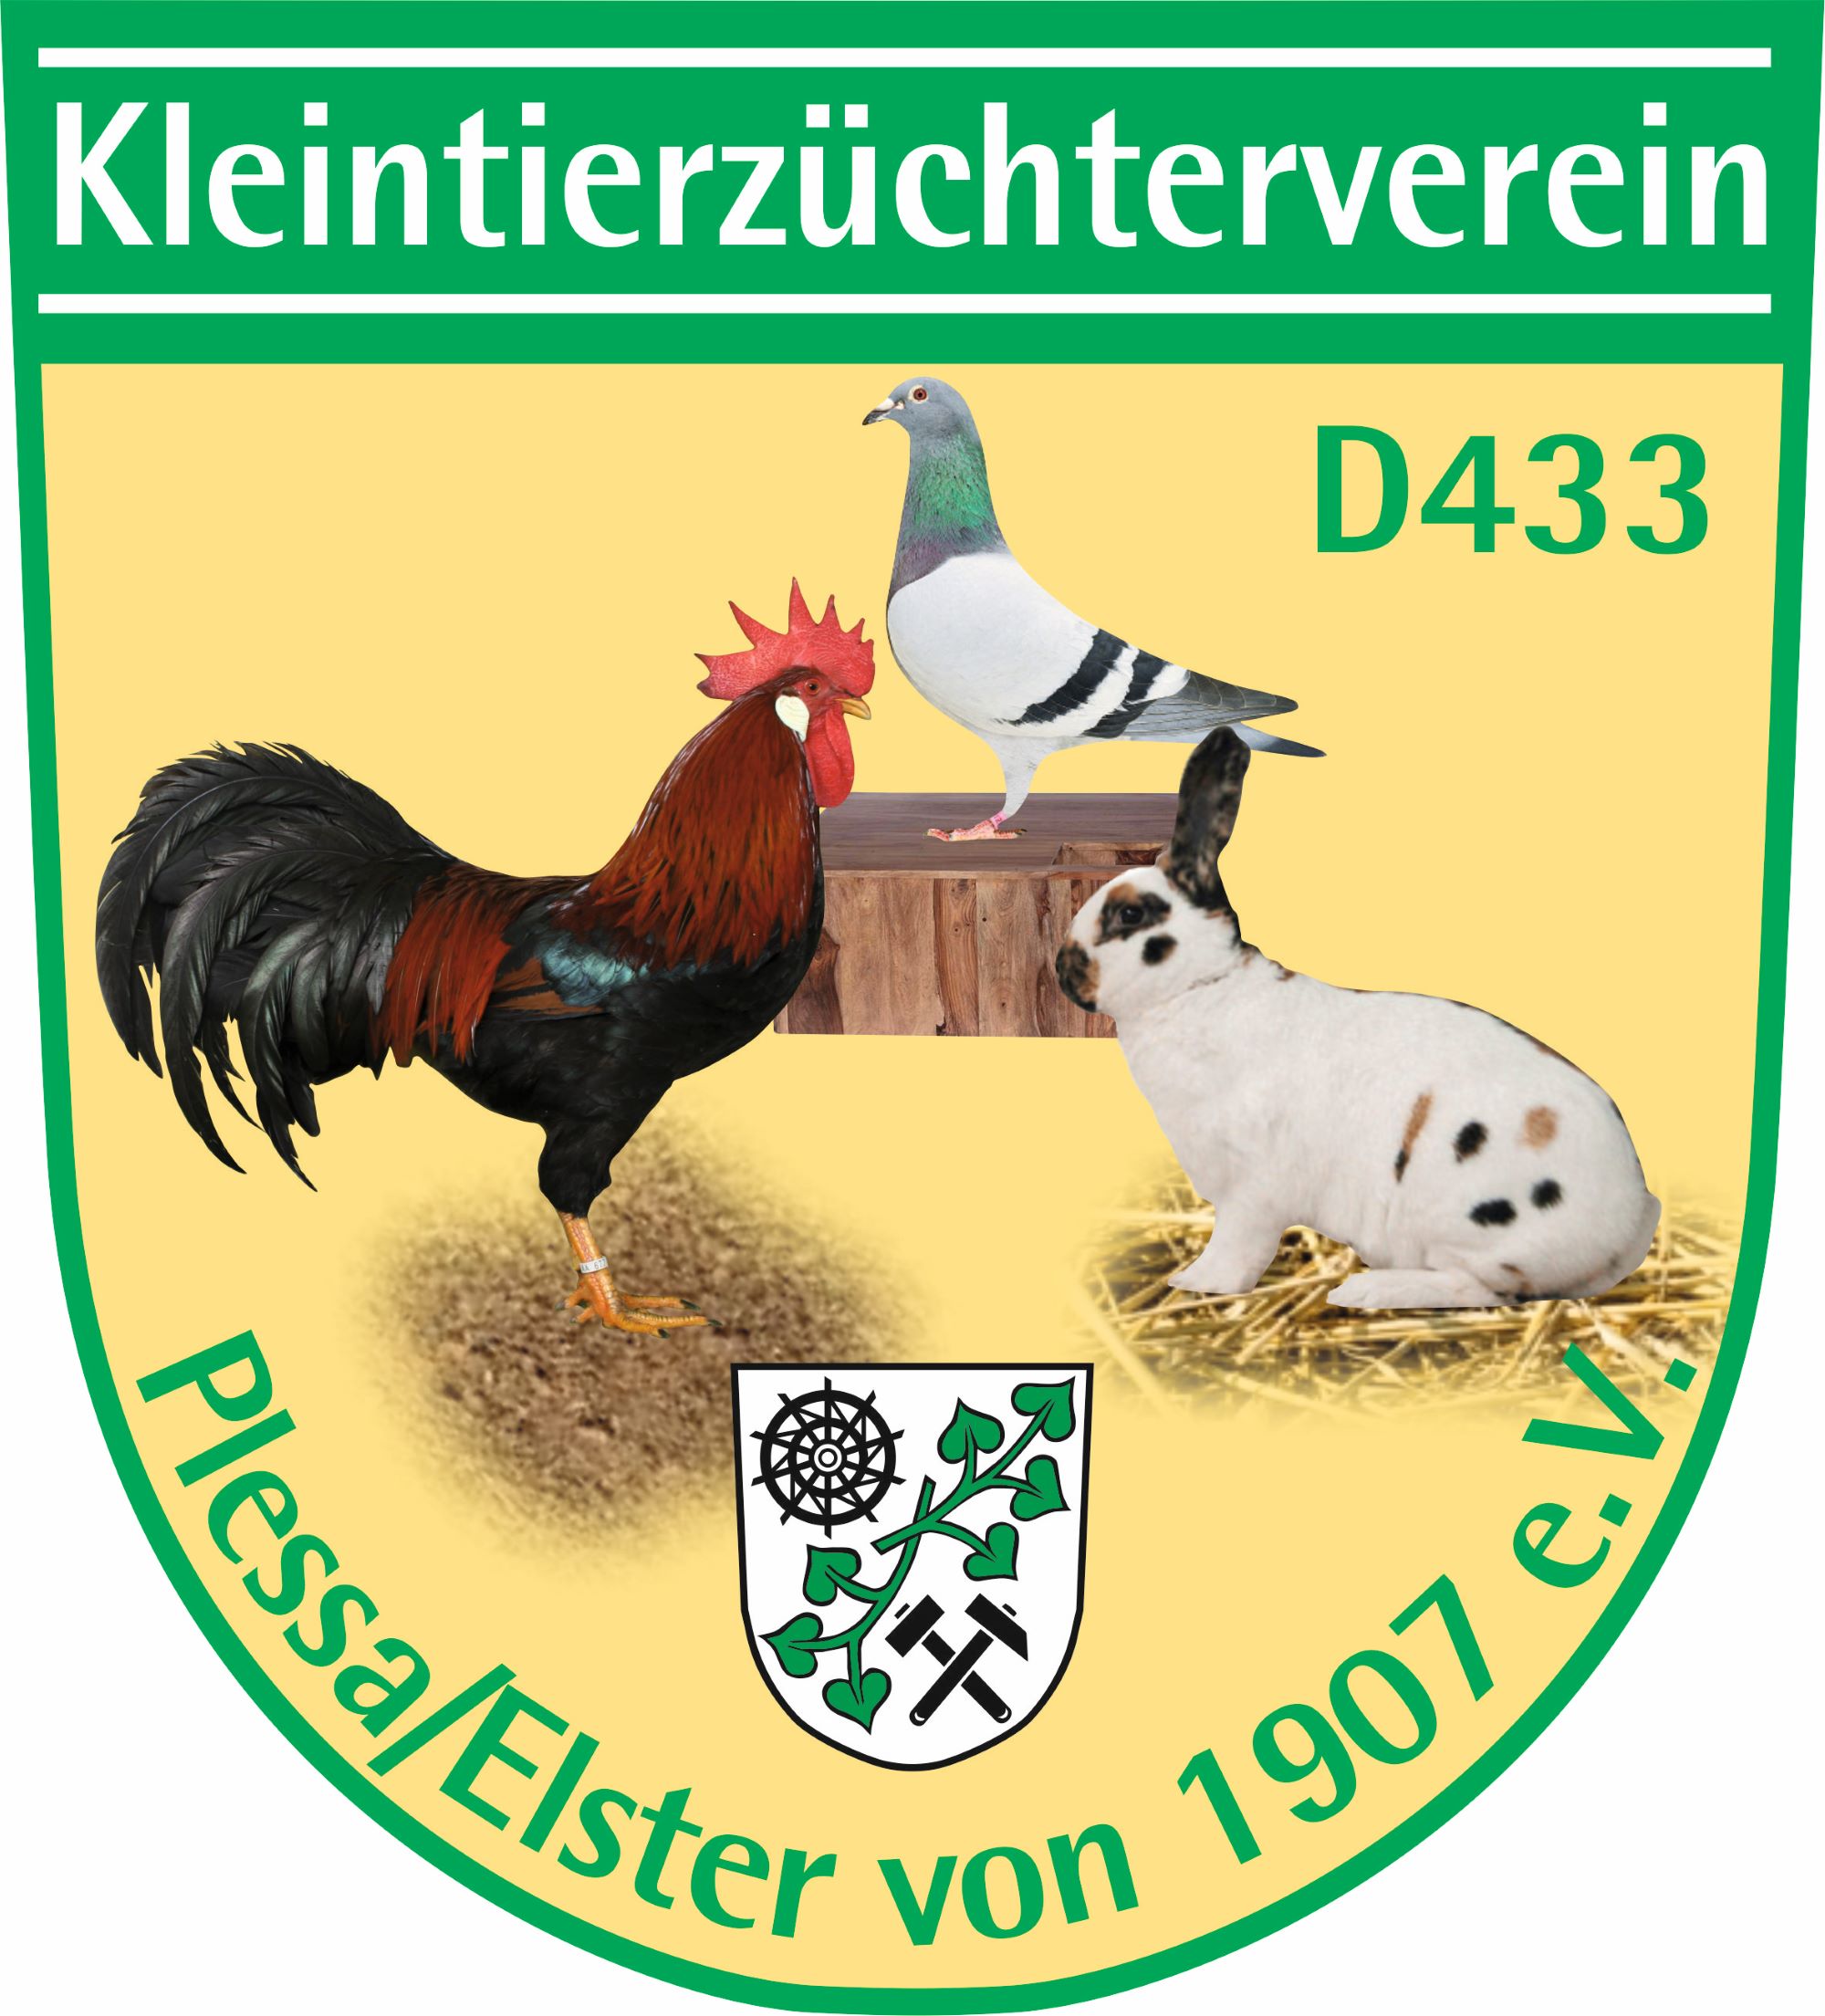 Kleintierzüchterverein D433 Plessa/Elster von 1907 e.V.